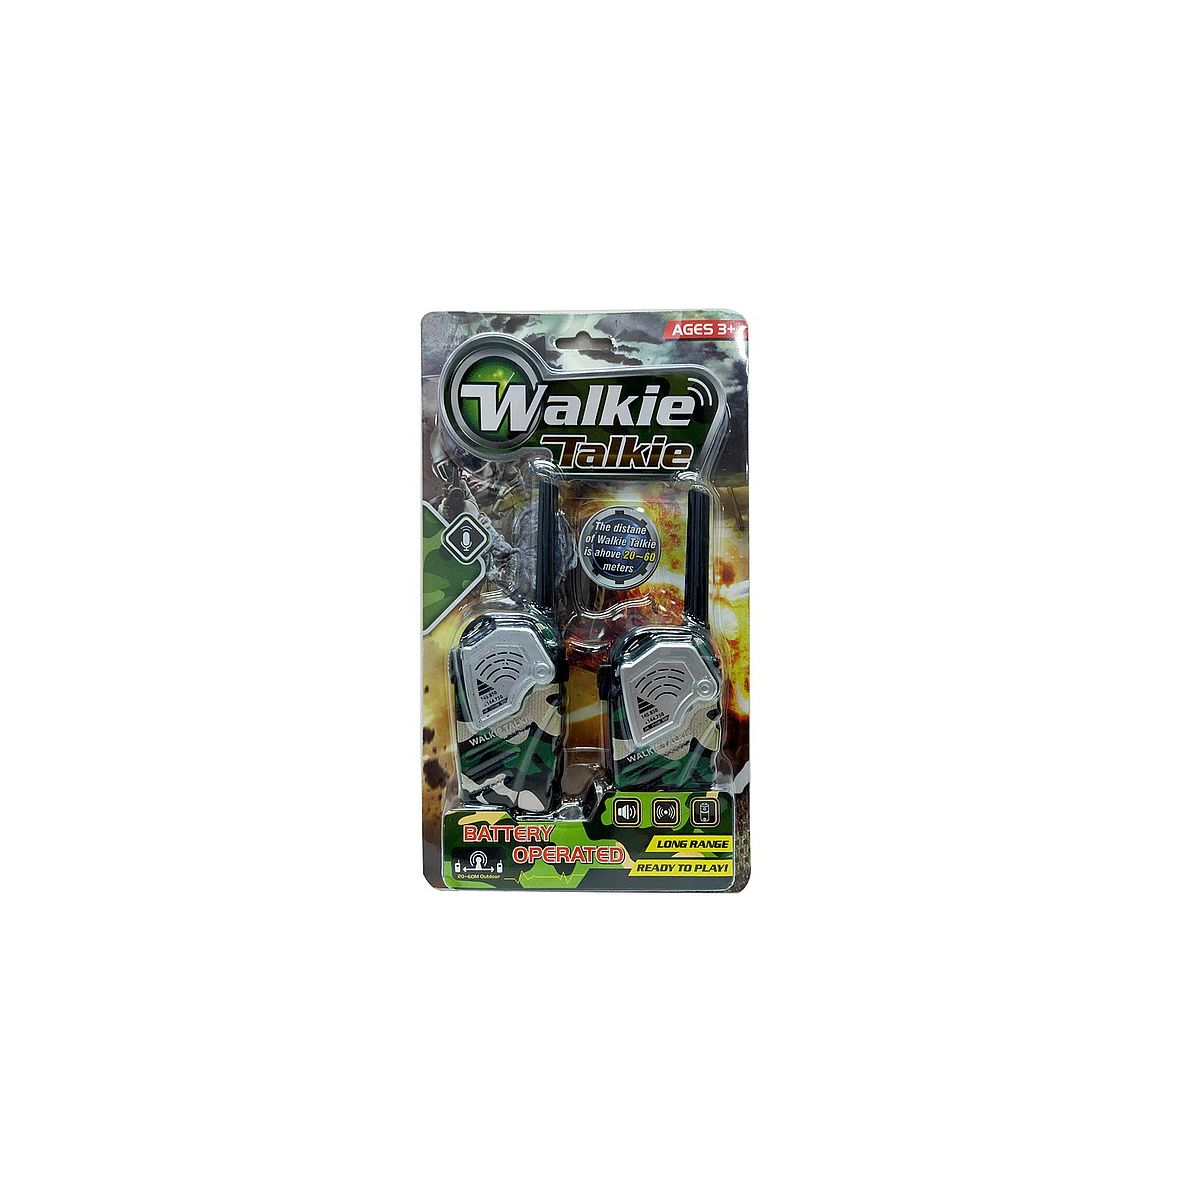 Walkie-talkie Adar (540965)